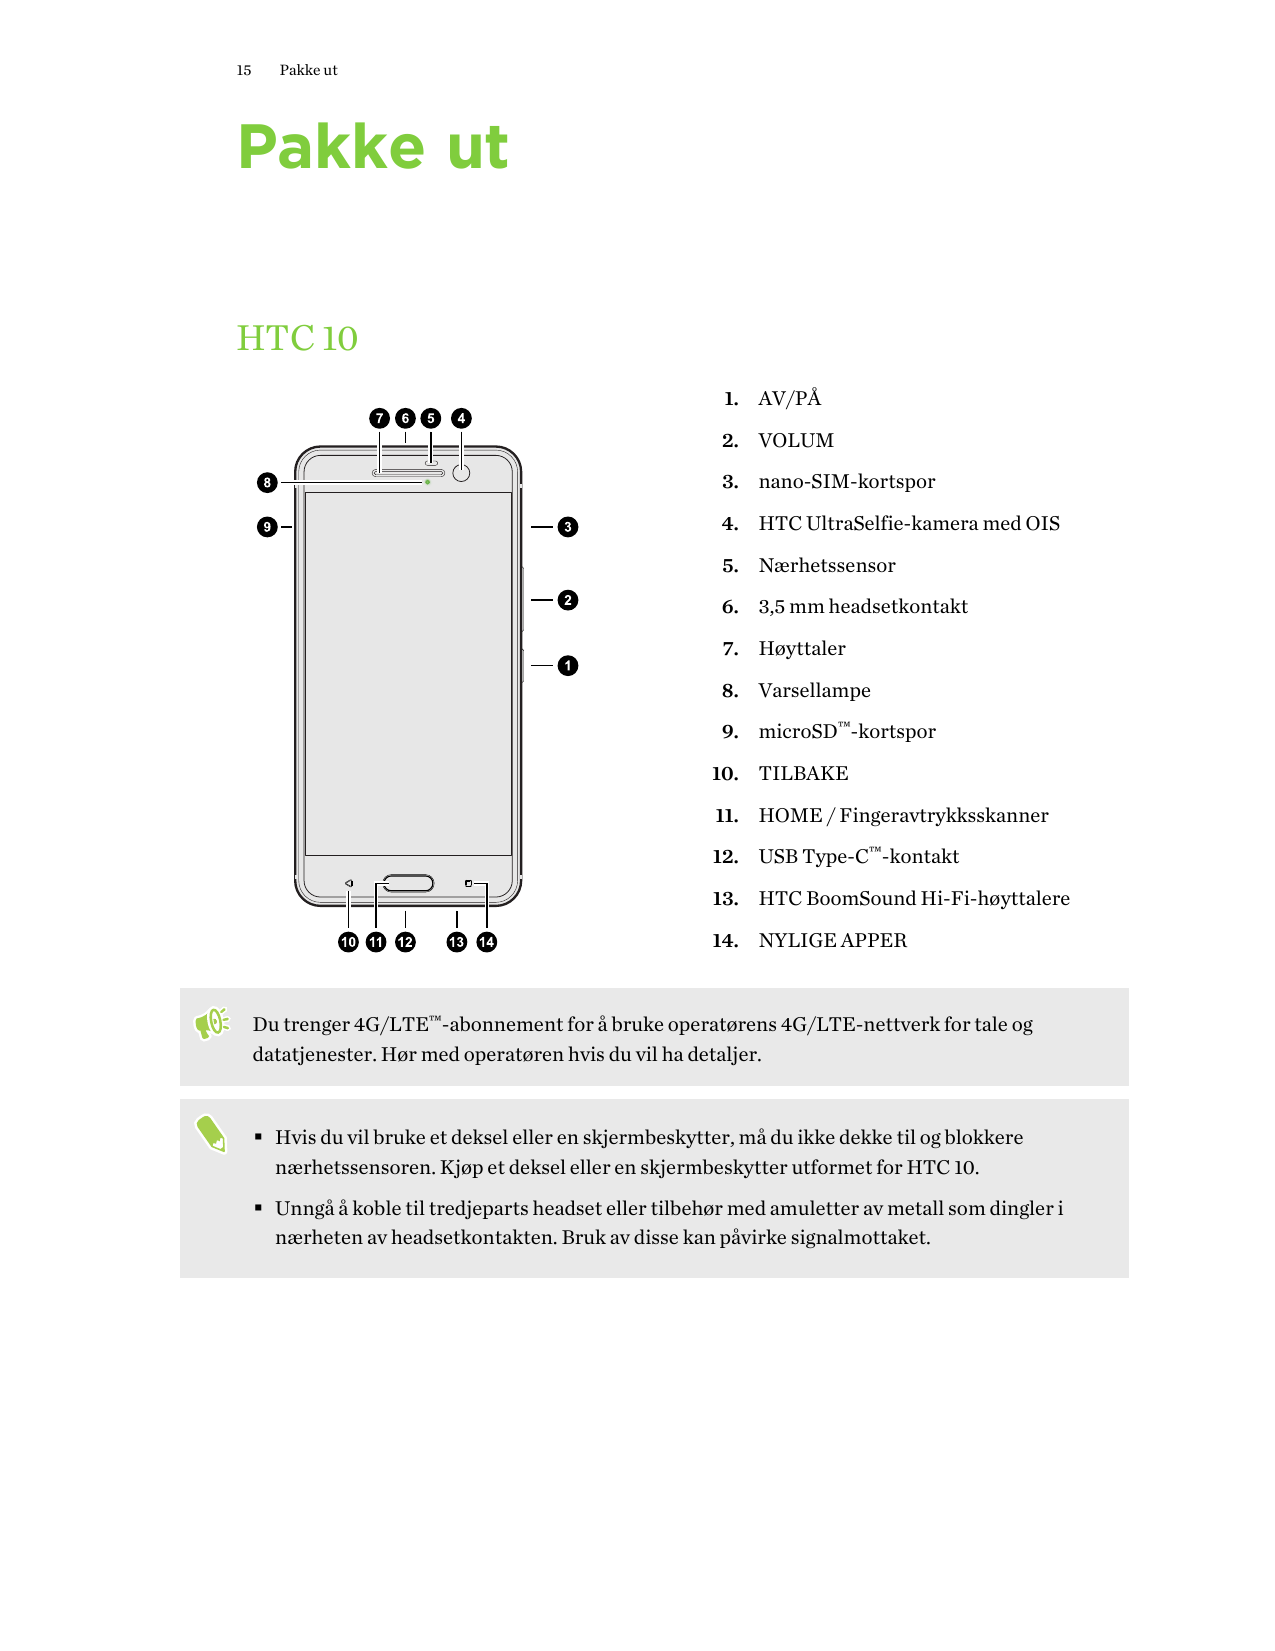 15Pakke utPakke utHTC 101. AV/PÅ2. VOLUM3. nano-SIM-kortspor4. HTC UltraSelfie-kamera med OIS5. Nærhetssensor6. 3,5 mm headsetko